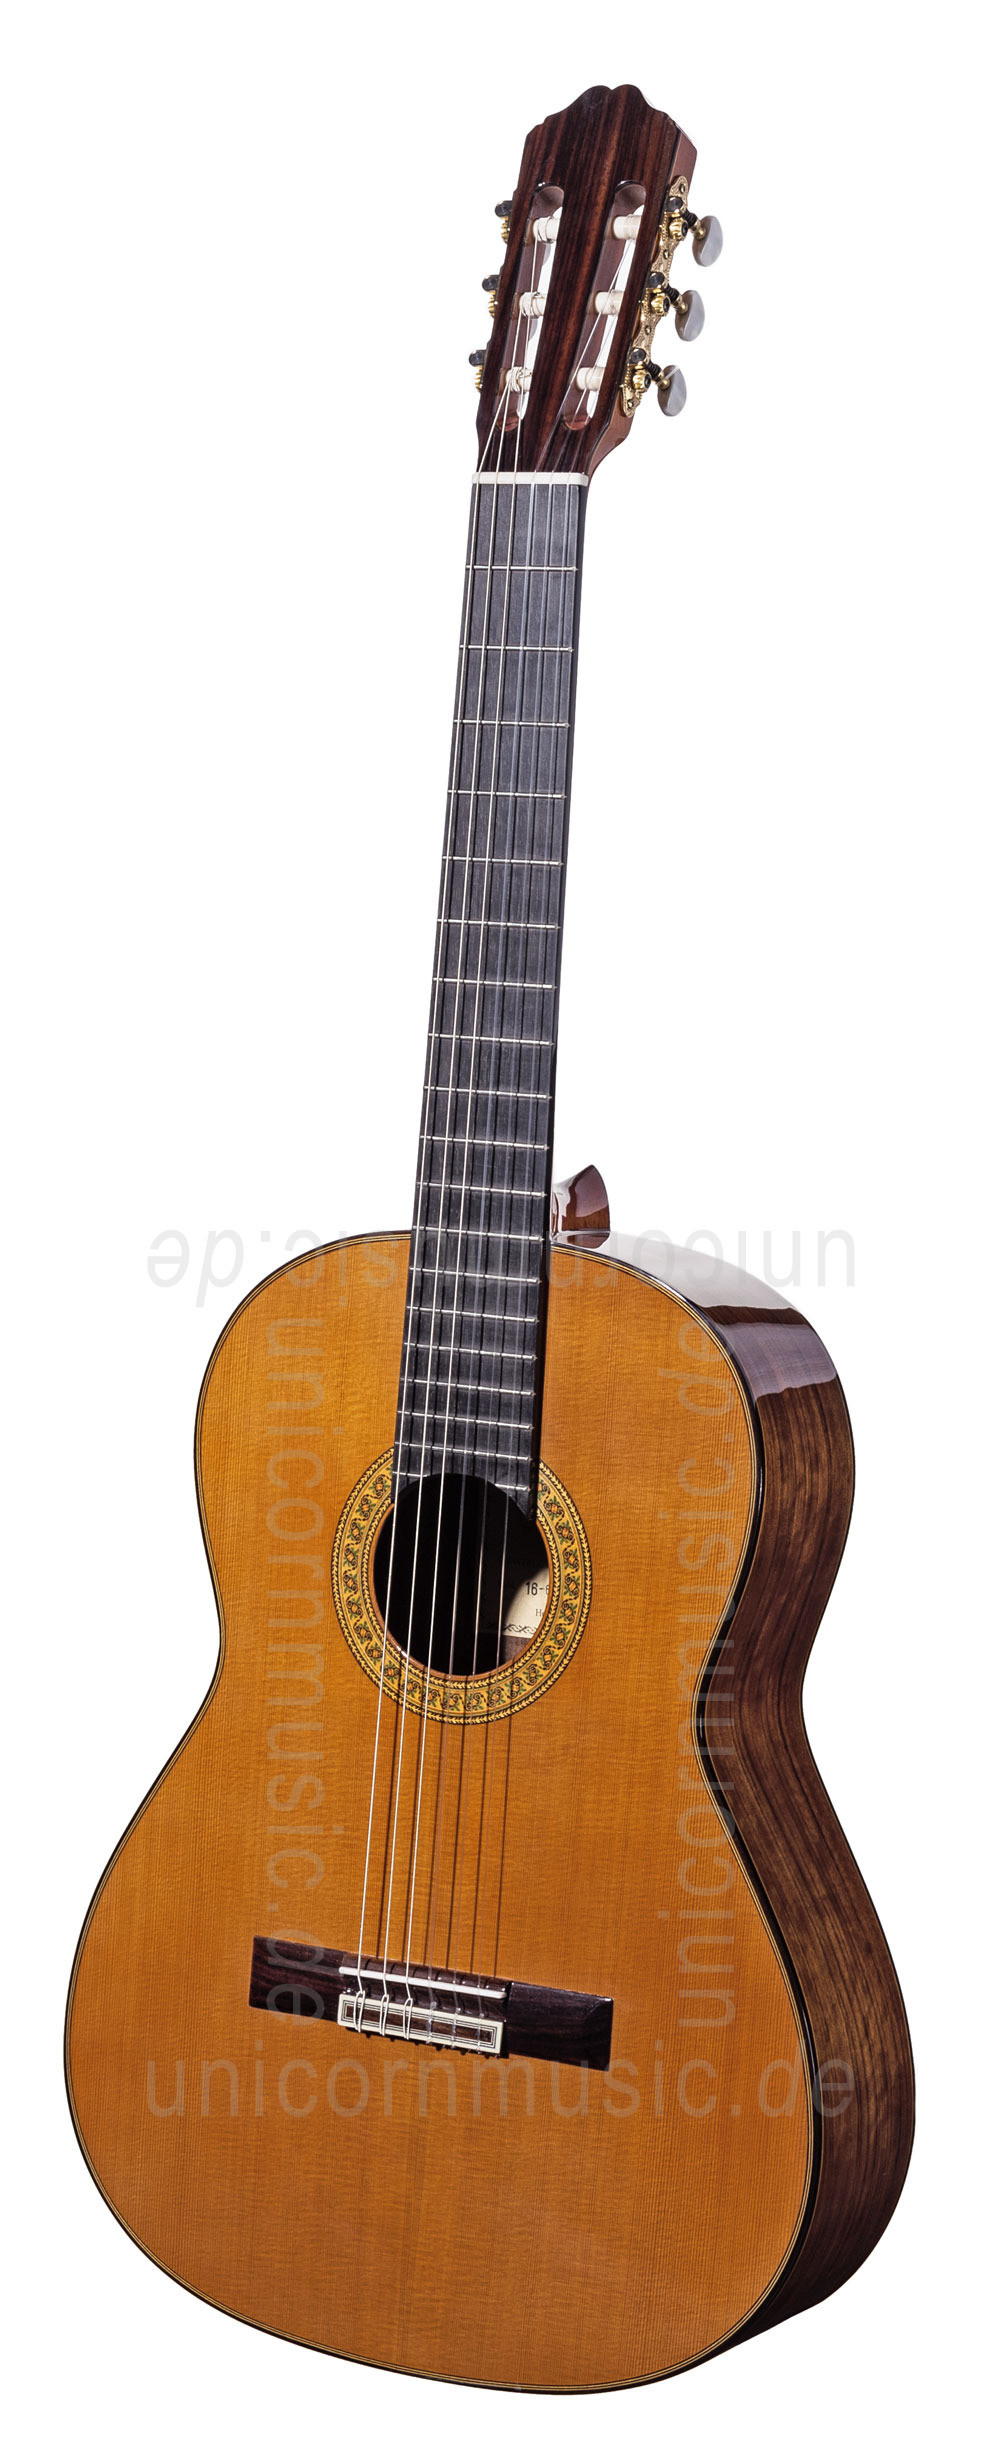 to article description / price Spanish Classical Guitar VALDEZ MODEL 16/63 SENORITA (ladies